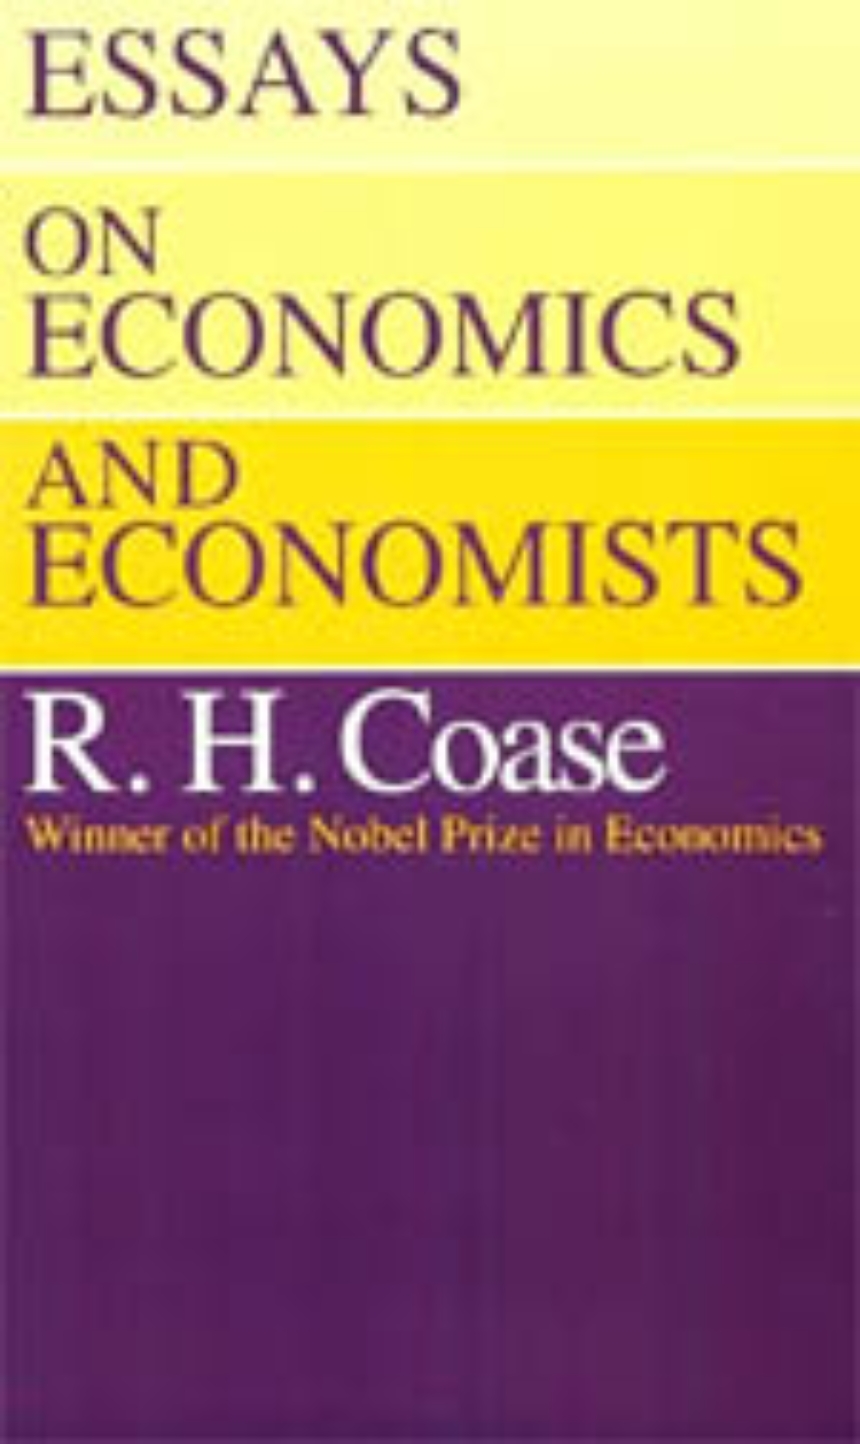 Essays on Economics and Economists